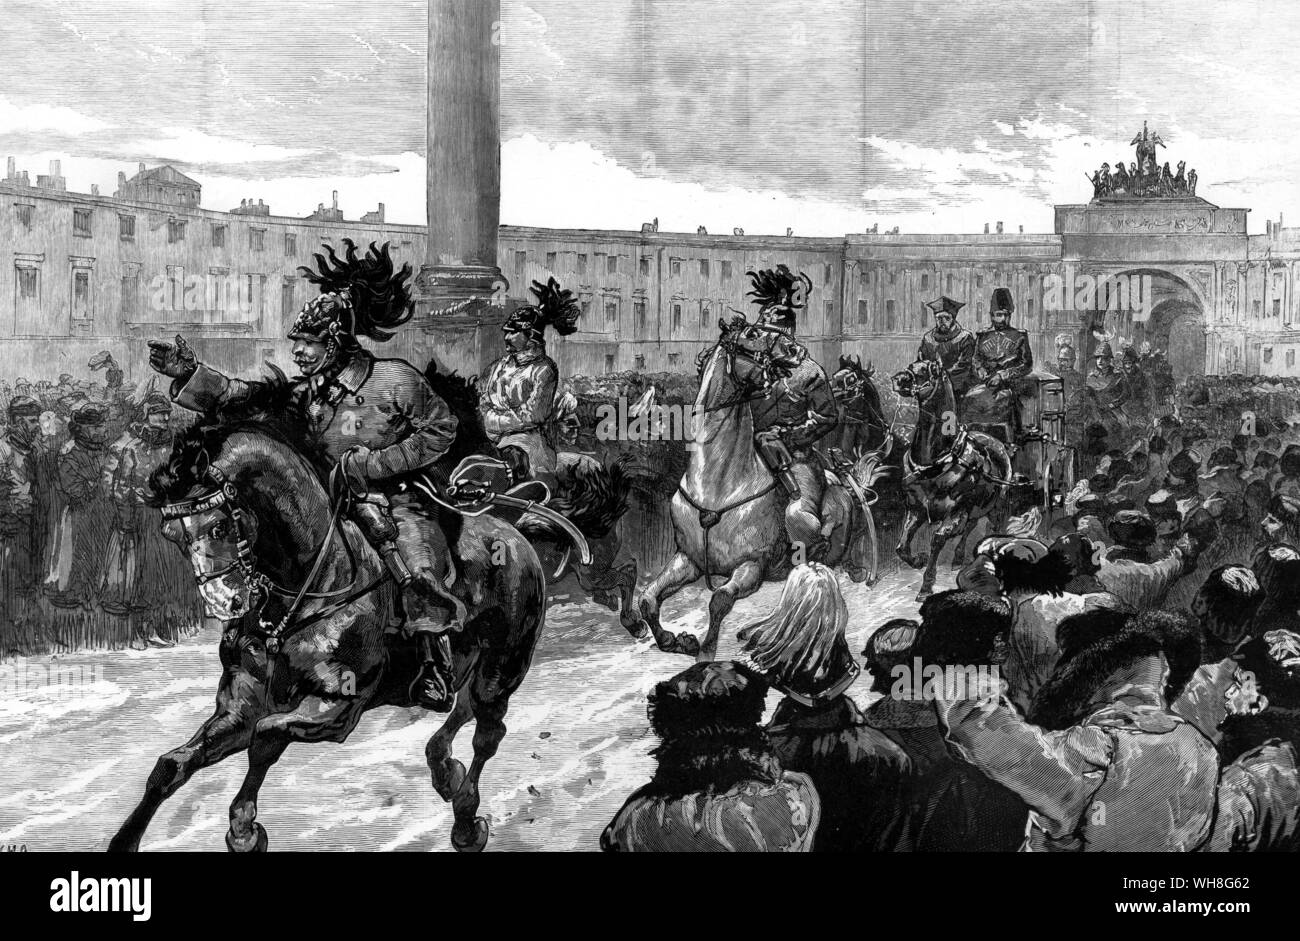 L'arrivée du nouvel Empereur et Impératrice de Russie au Palais d'hiver, St Petersburg, 1881. Alexandre III (1845-1894), régna comme empereur de Russie du 14 mars 1881 jusqu'à sa mort en 1894.. . Banque D'Images